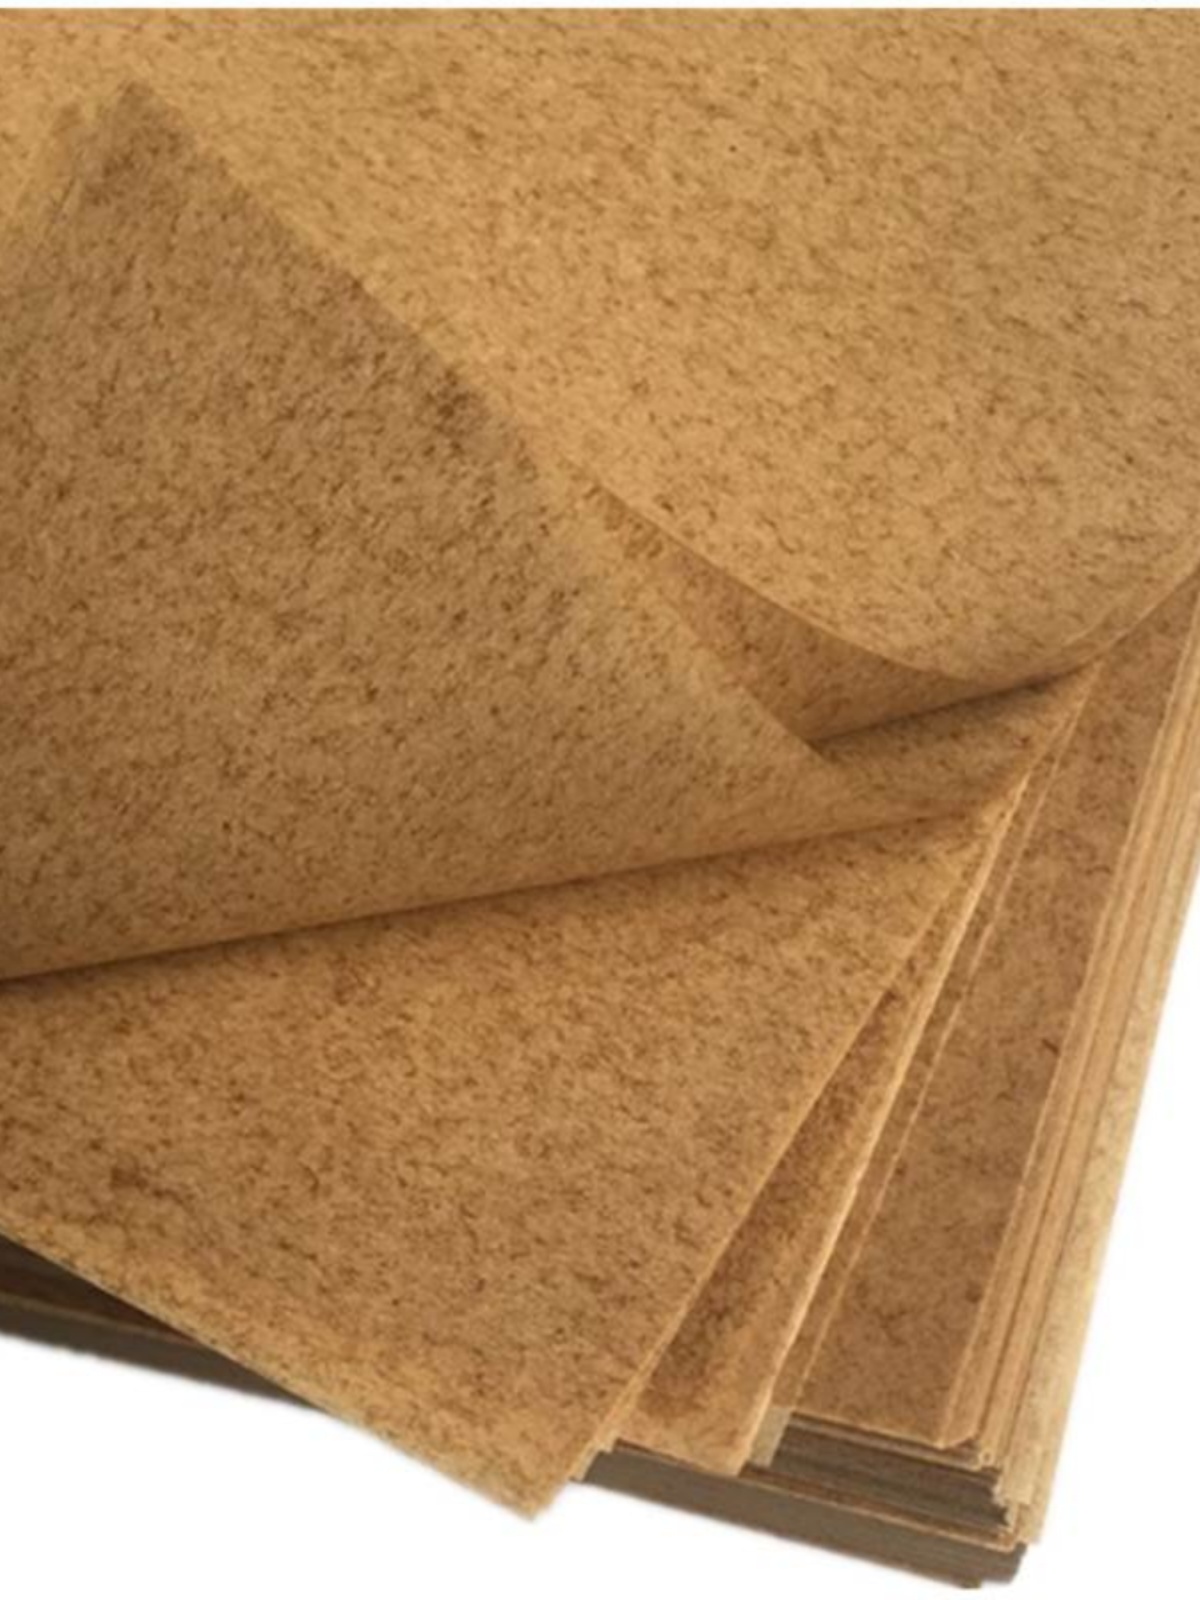 新品工业防锈纸防潮纸机器零件金属轴承包装纸油纸防油纸蜡纸包邮